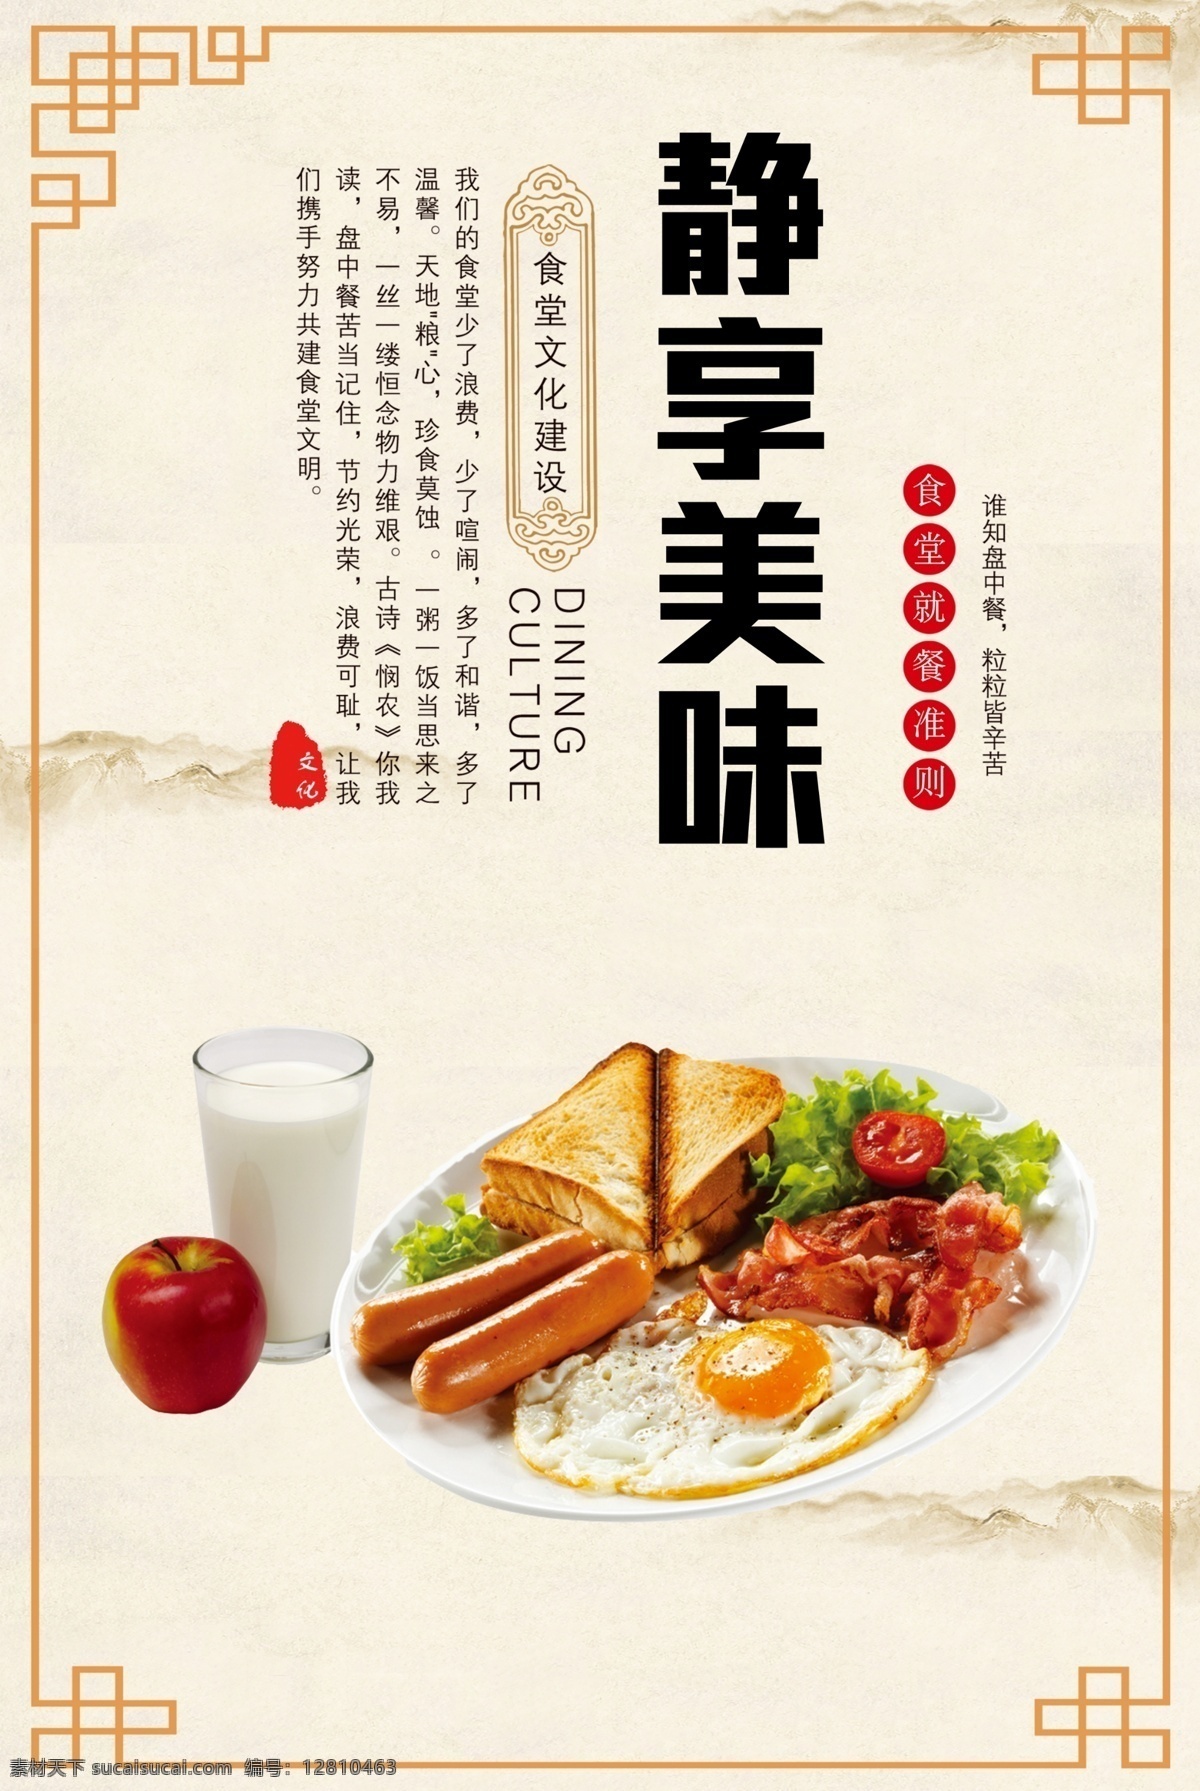 静享美味 食堂文化 印章 边框 蔬菜 营养牛奶 苹果 室内广告设计